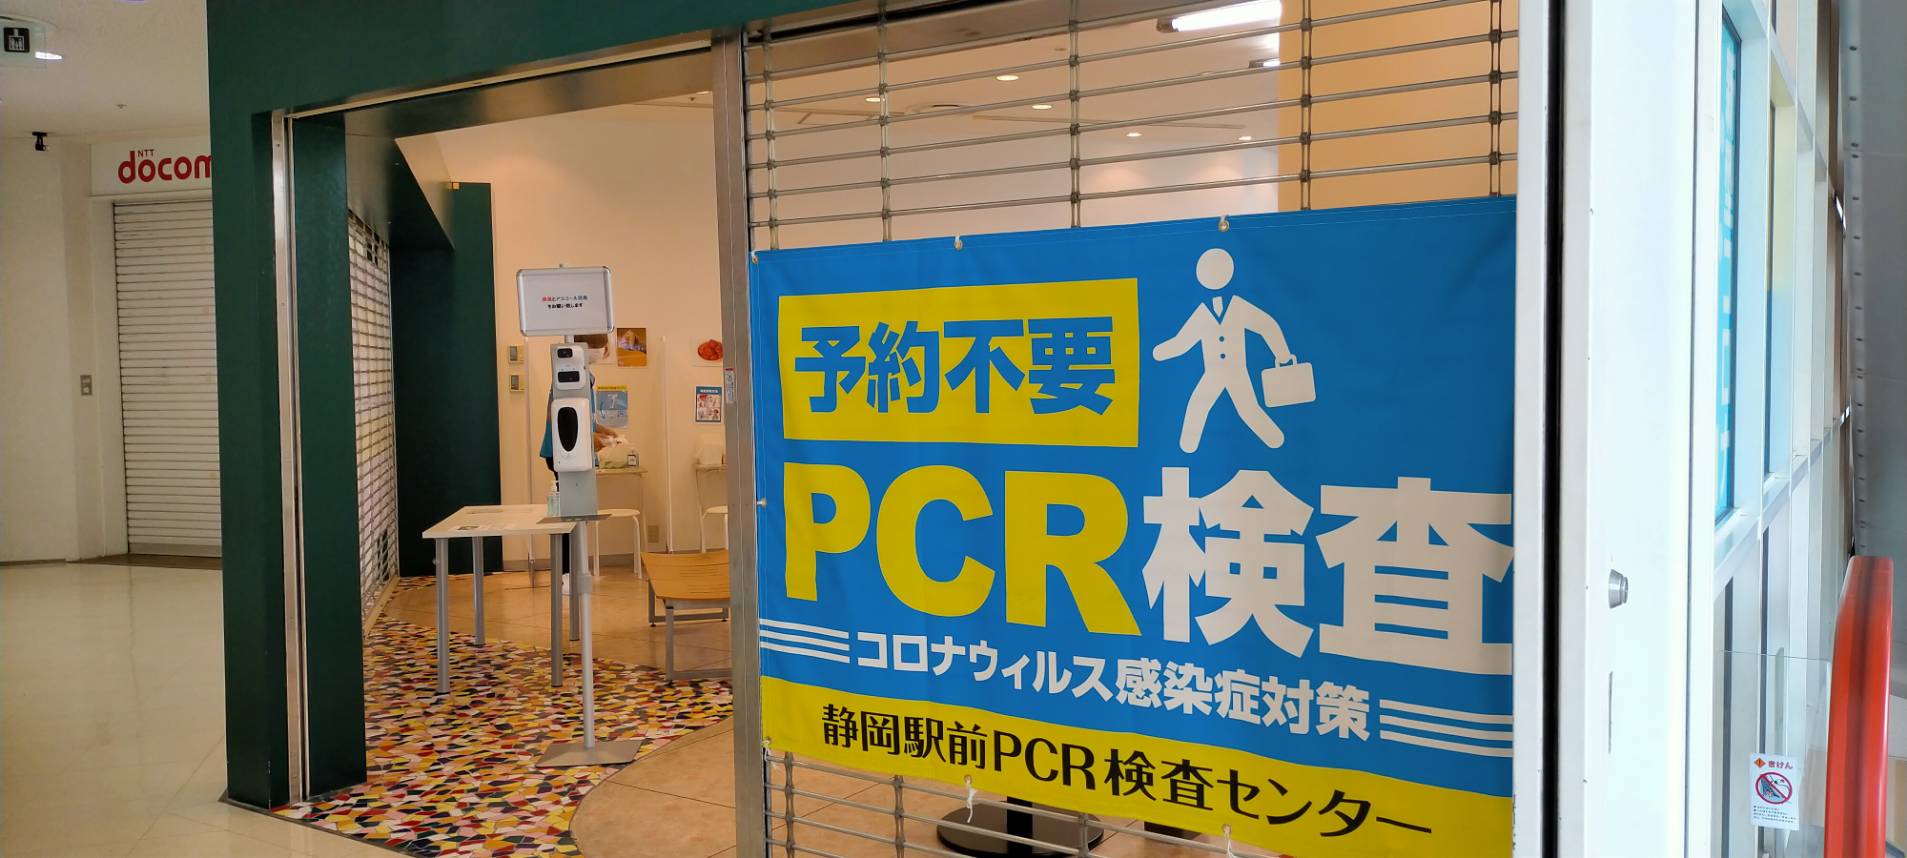 【予約不要・無料・即日結果】県民割にも使える静岡駅前PCR検査センター